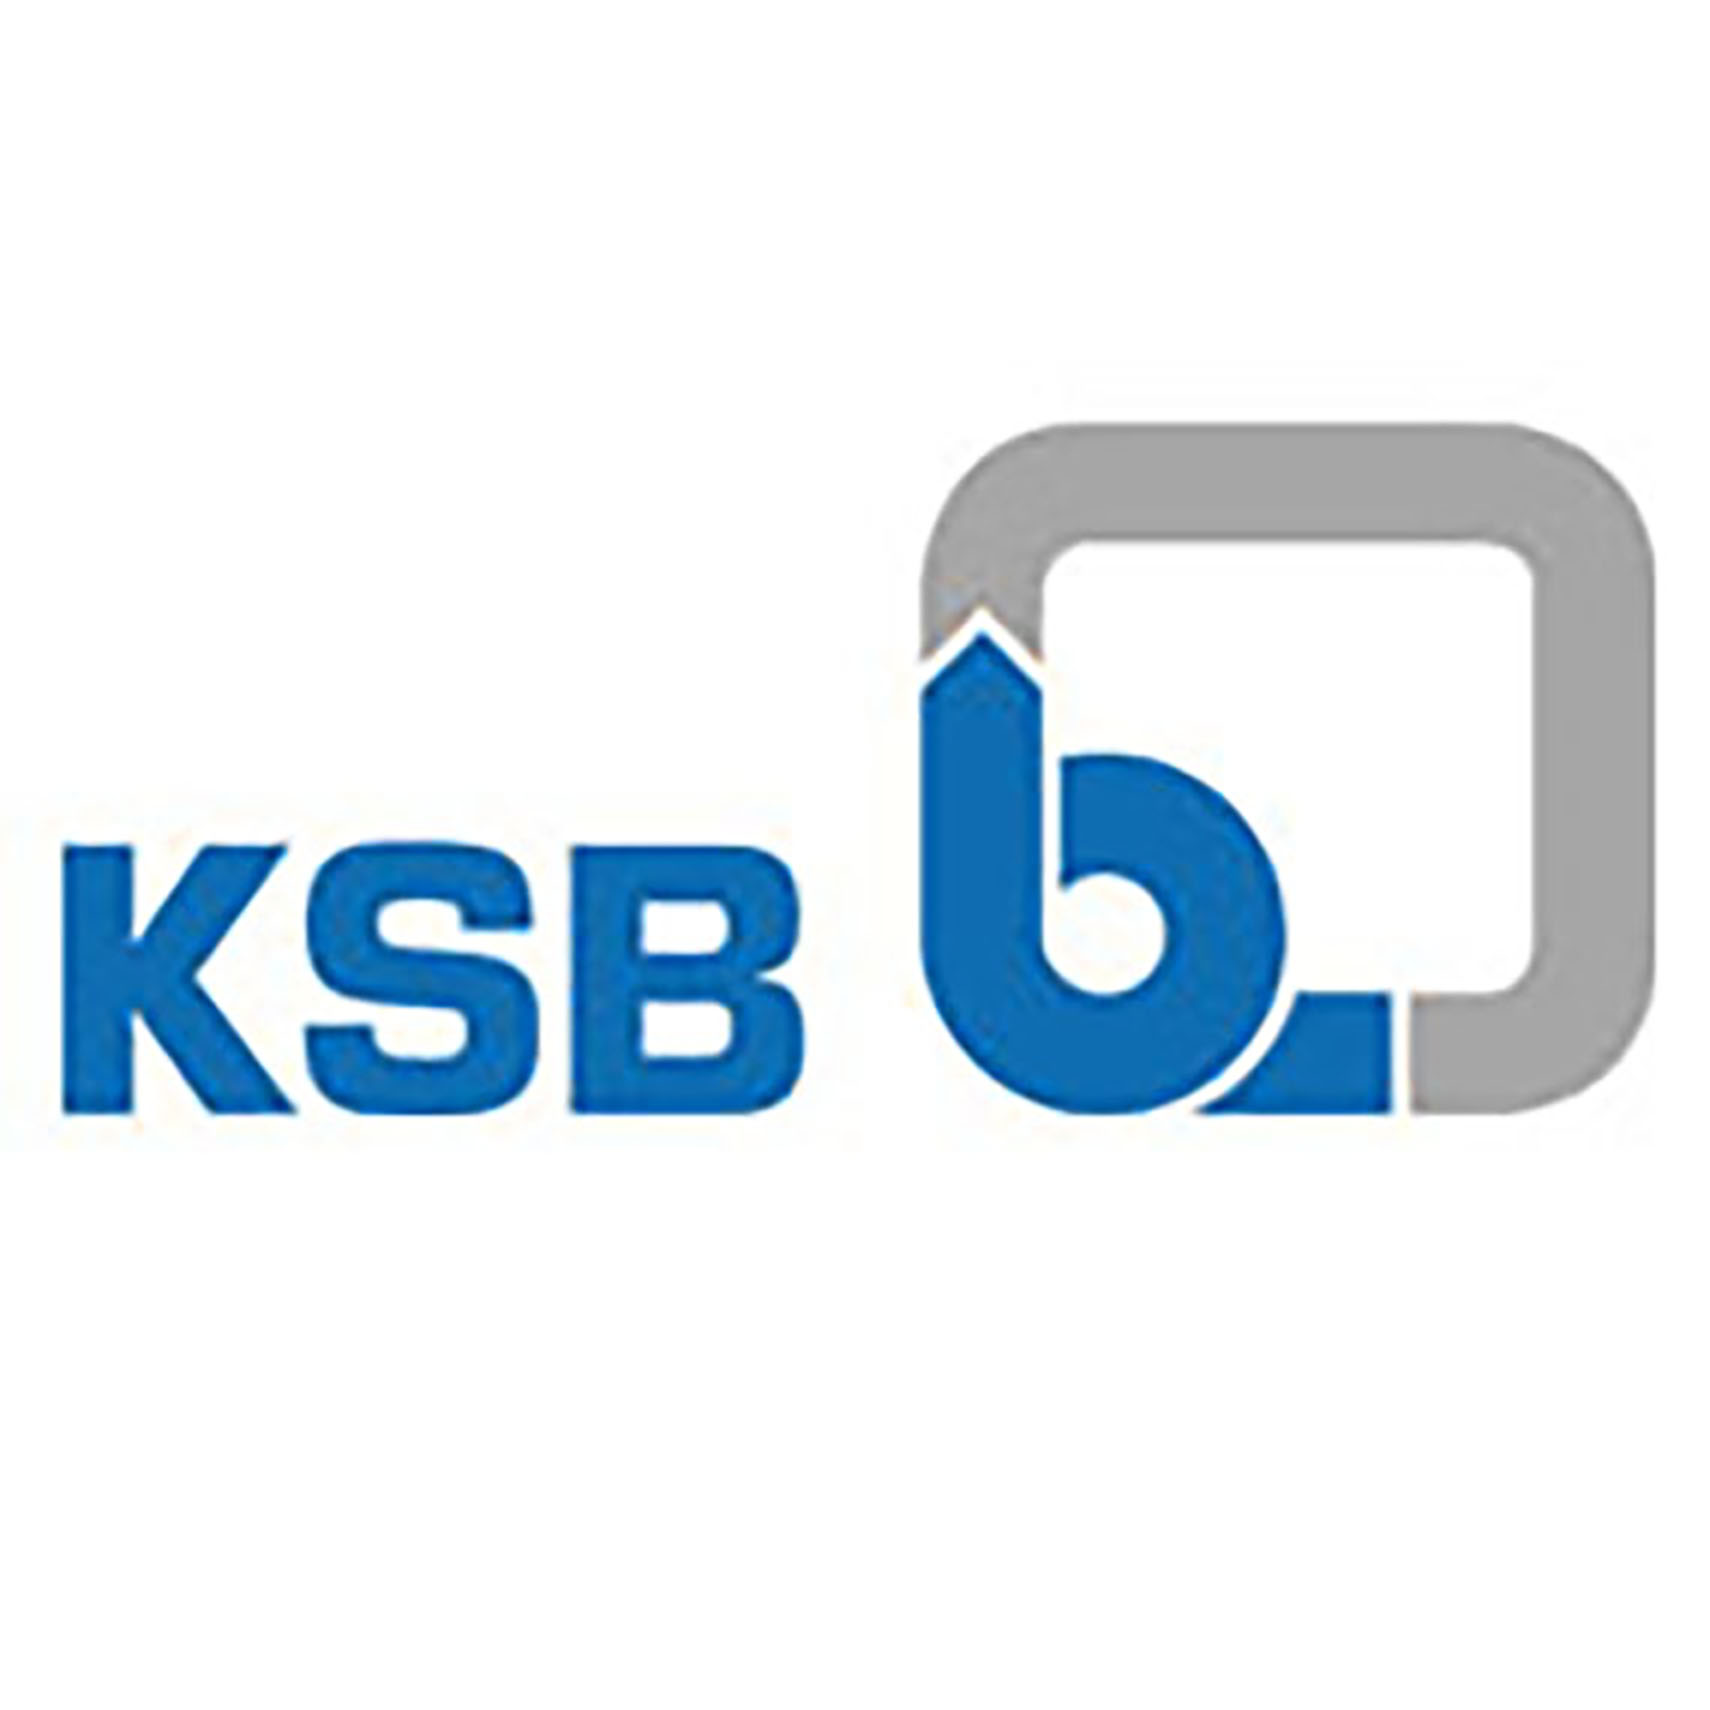 KSB AG Logo